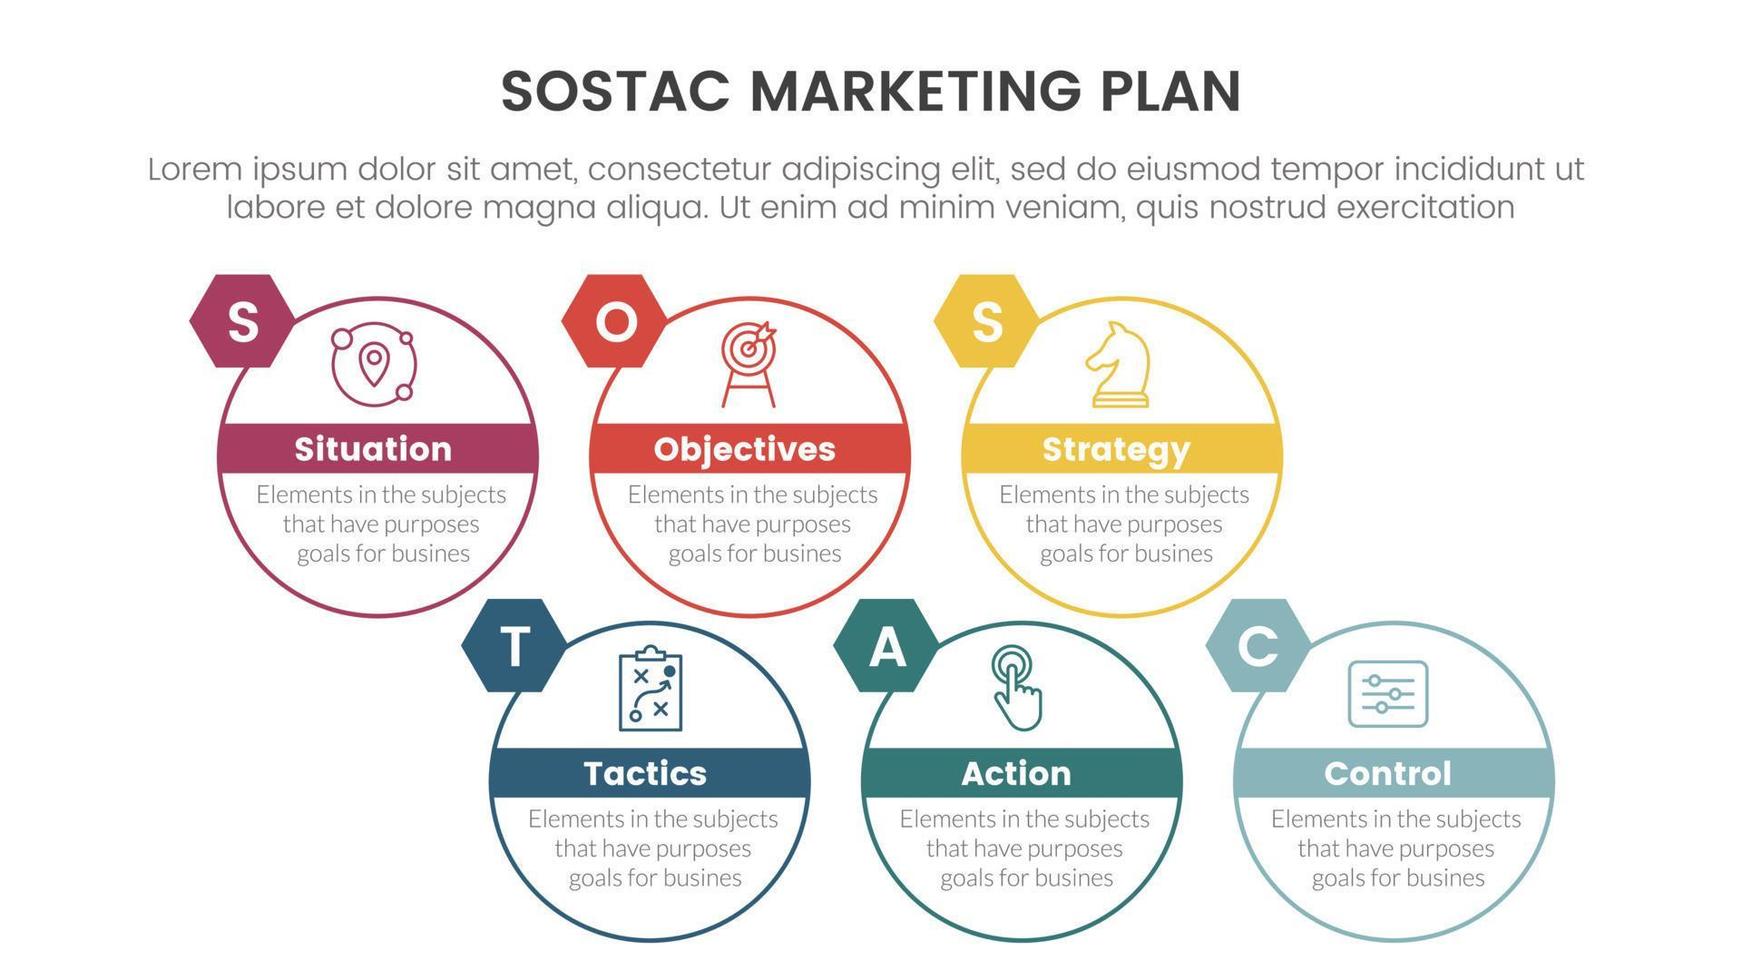 sostac digital márketing plan infografía 6 6 punto etapa modelo con cirlce redondo Derecha dirección concepto para diapositiva presentación vector